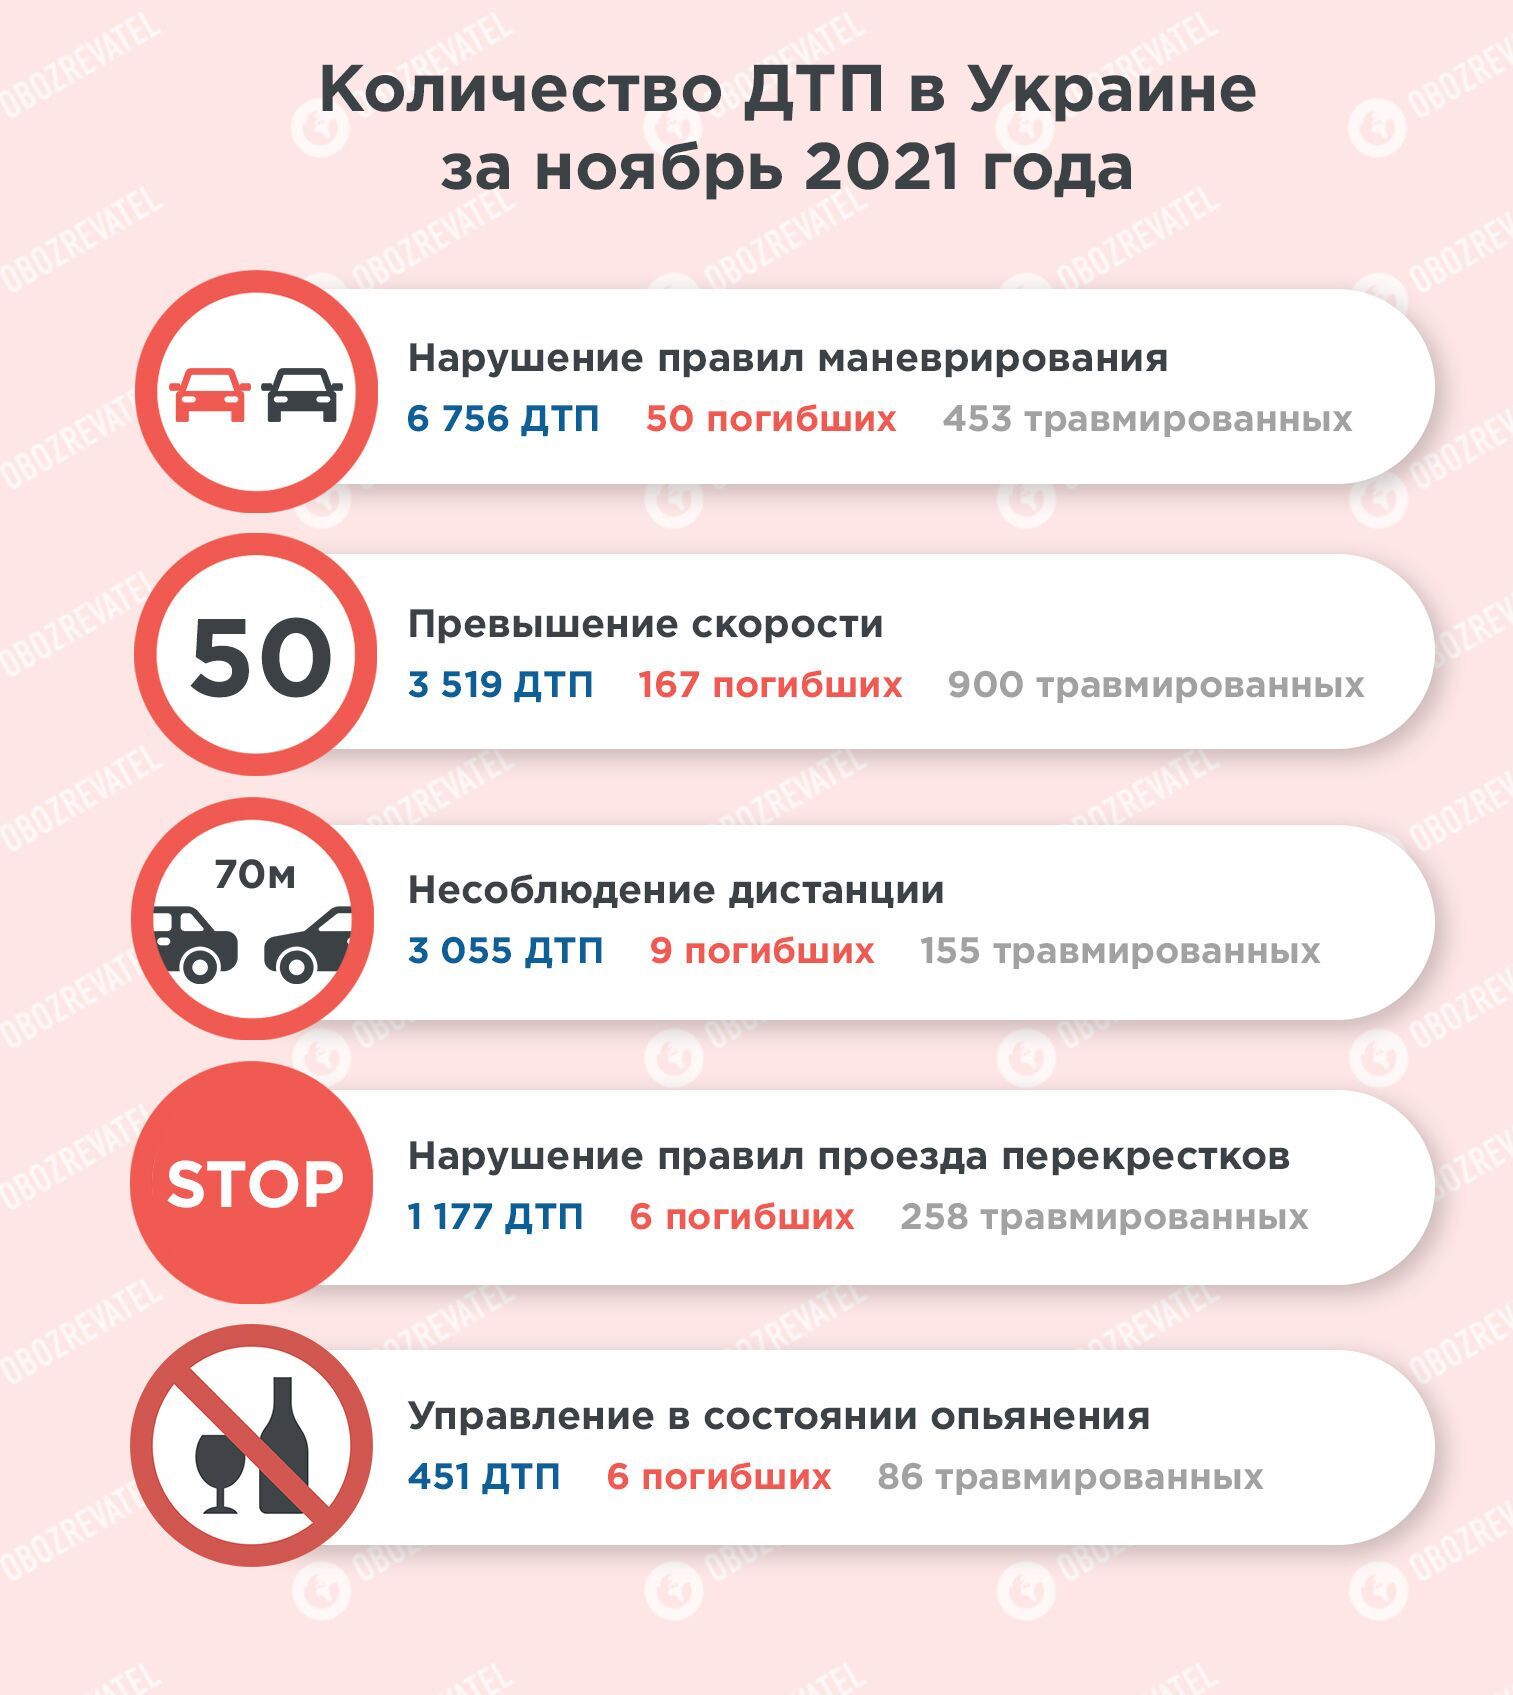 В ноябре 2021 года в Украине ДТП чаще всего происходили из-за нарушений правил маневрирования